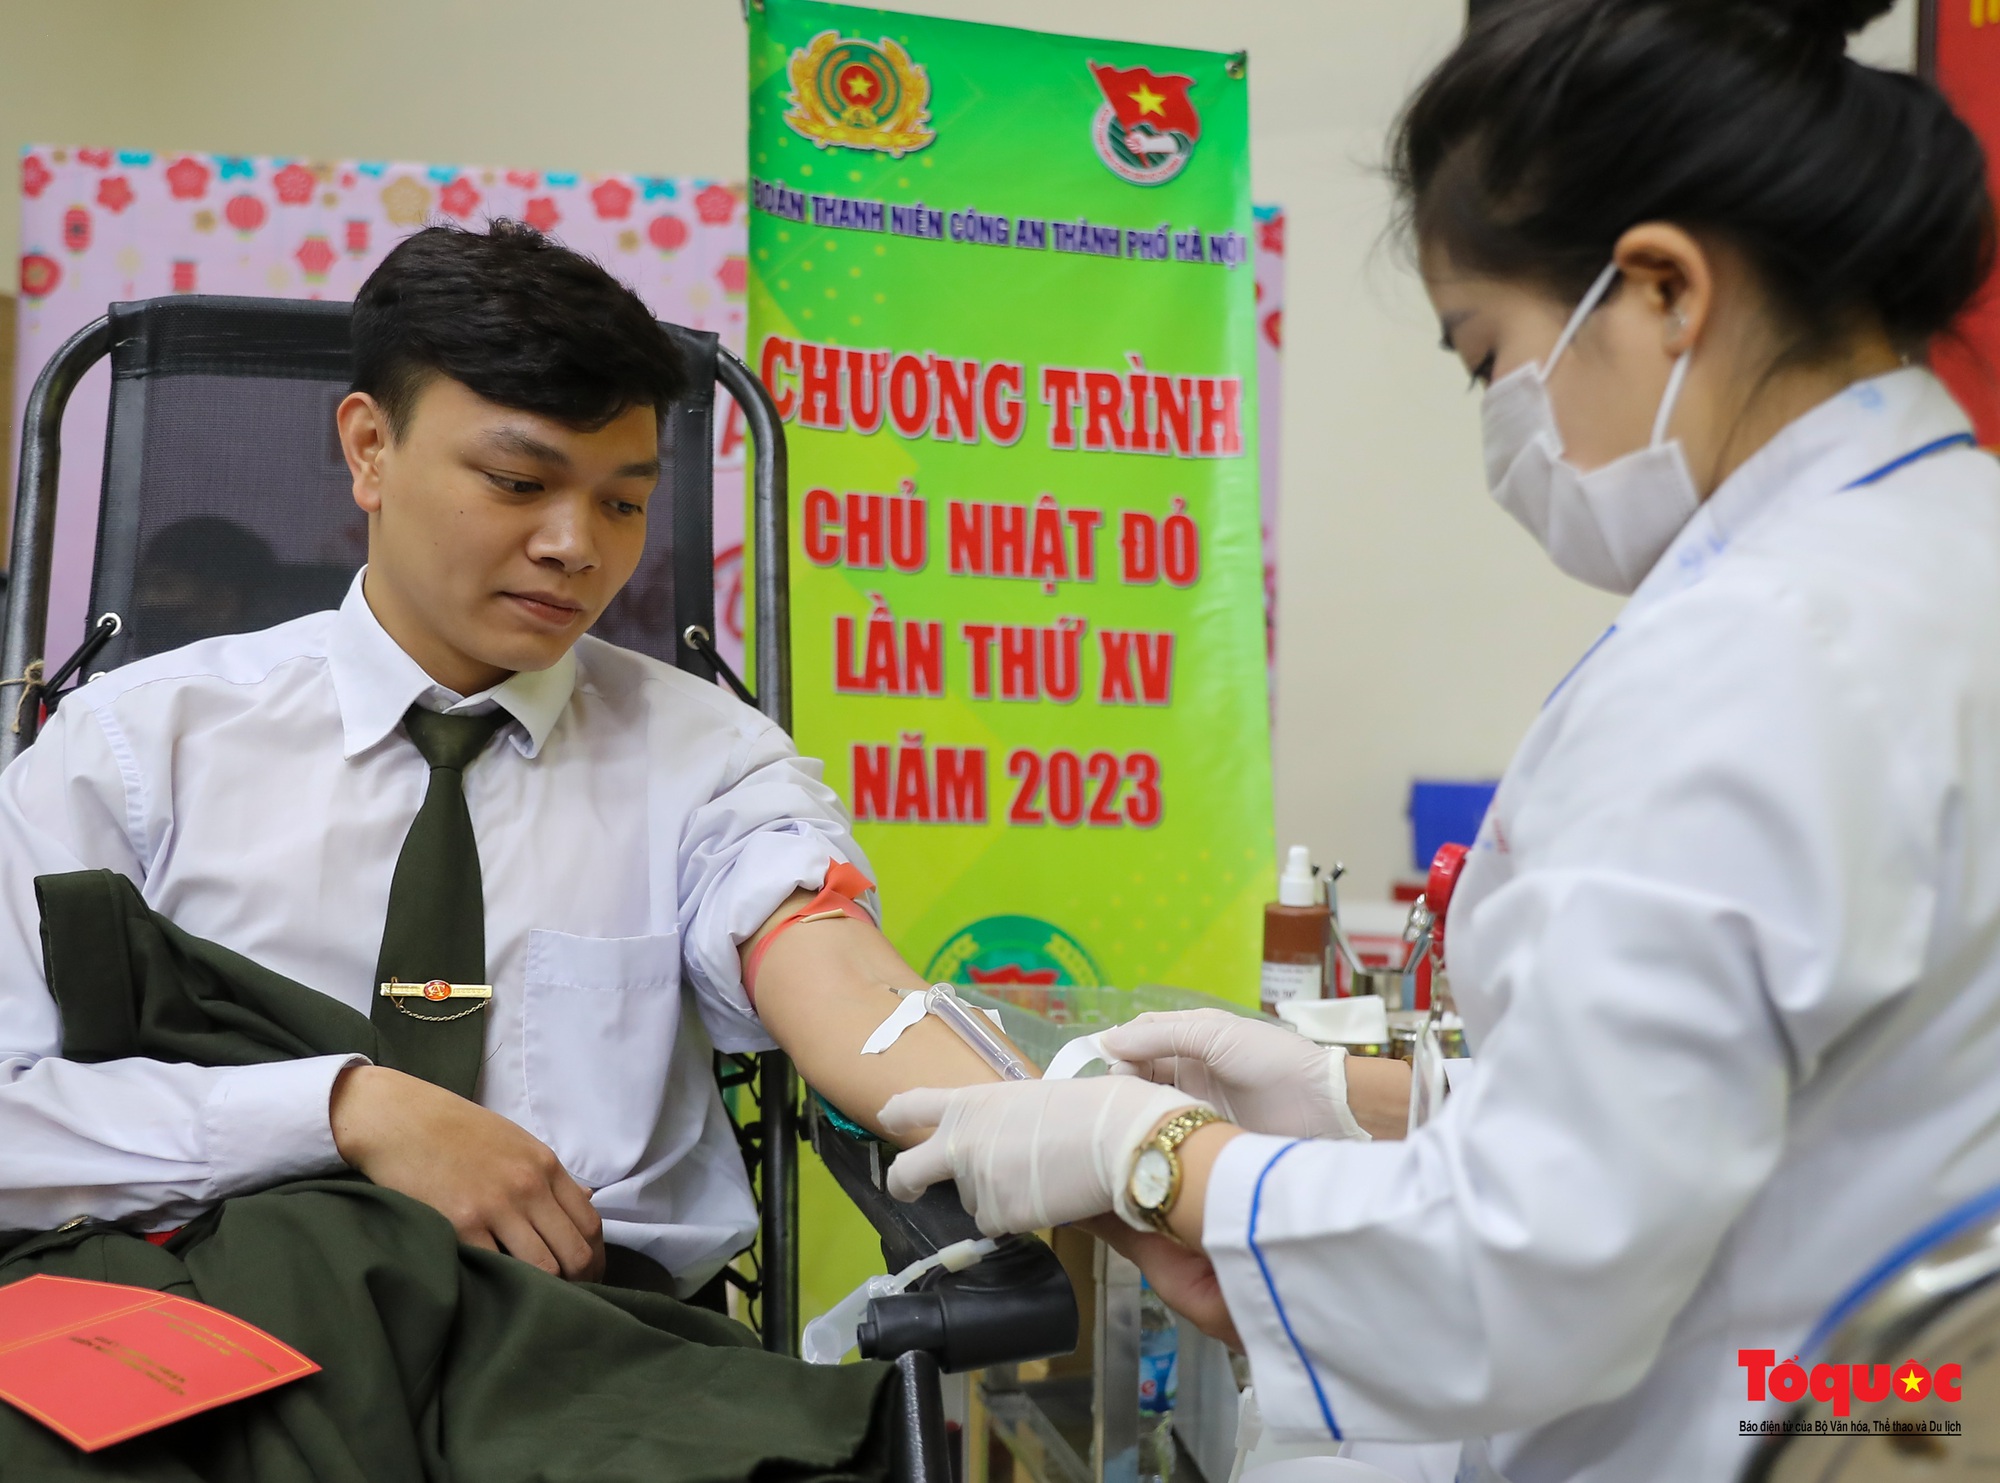 Tuổi trẻ Công an Thủ đô hiến máu cứu người trong những ngày đầu năm mới 2023 - Ảnh 13.